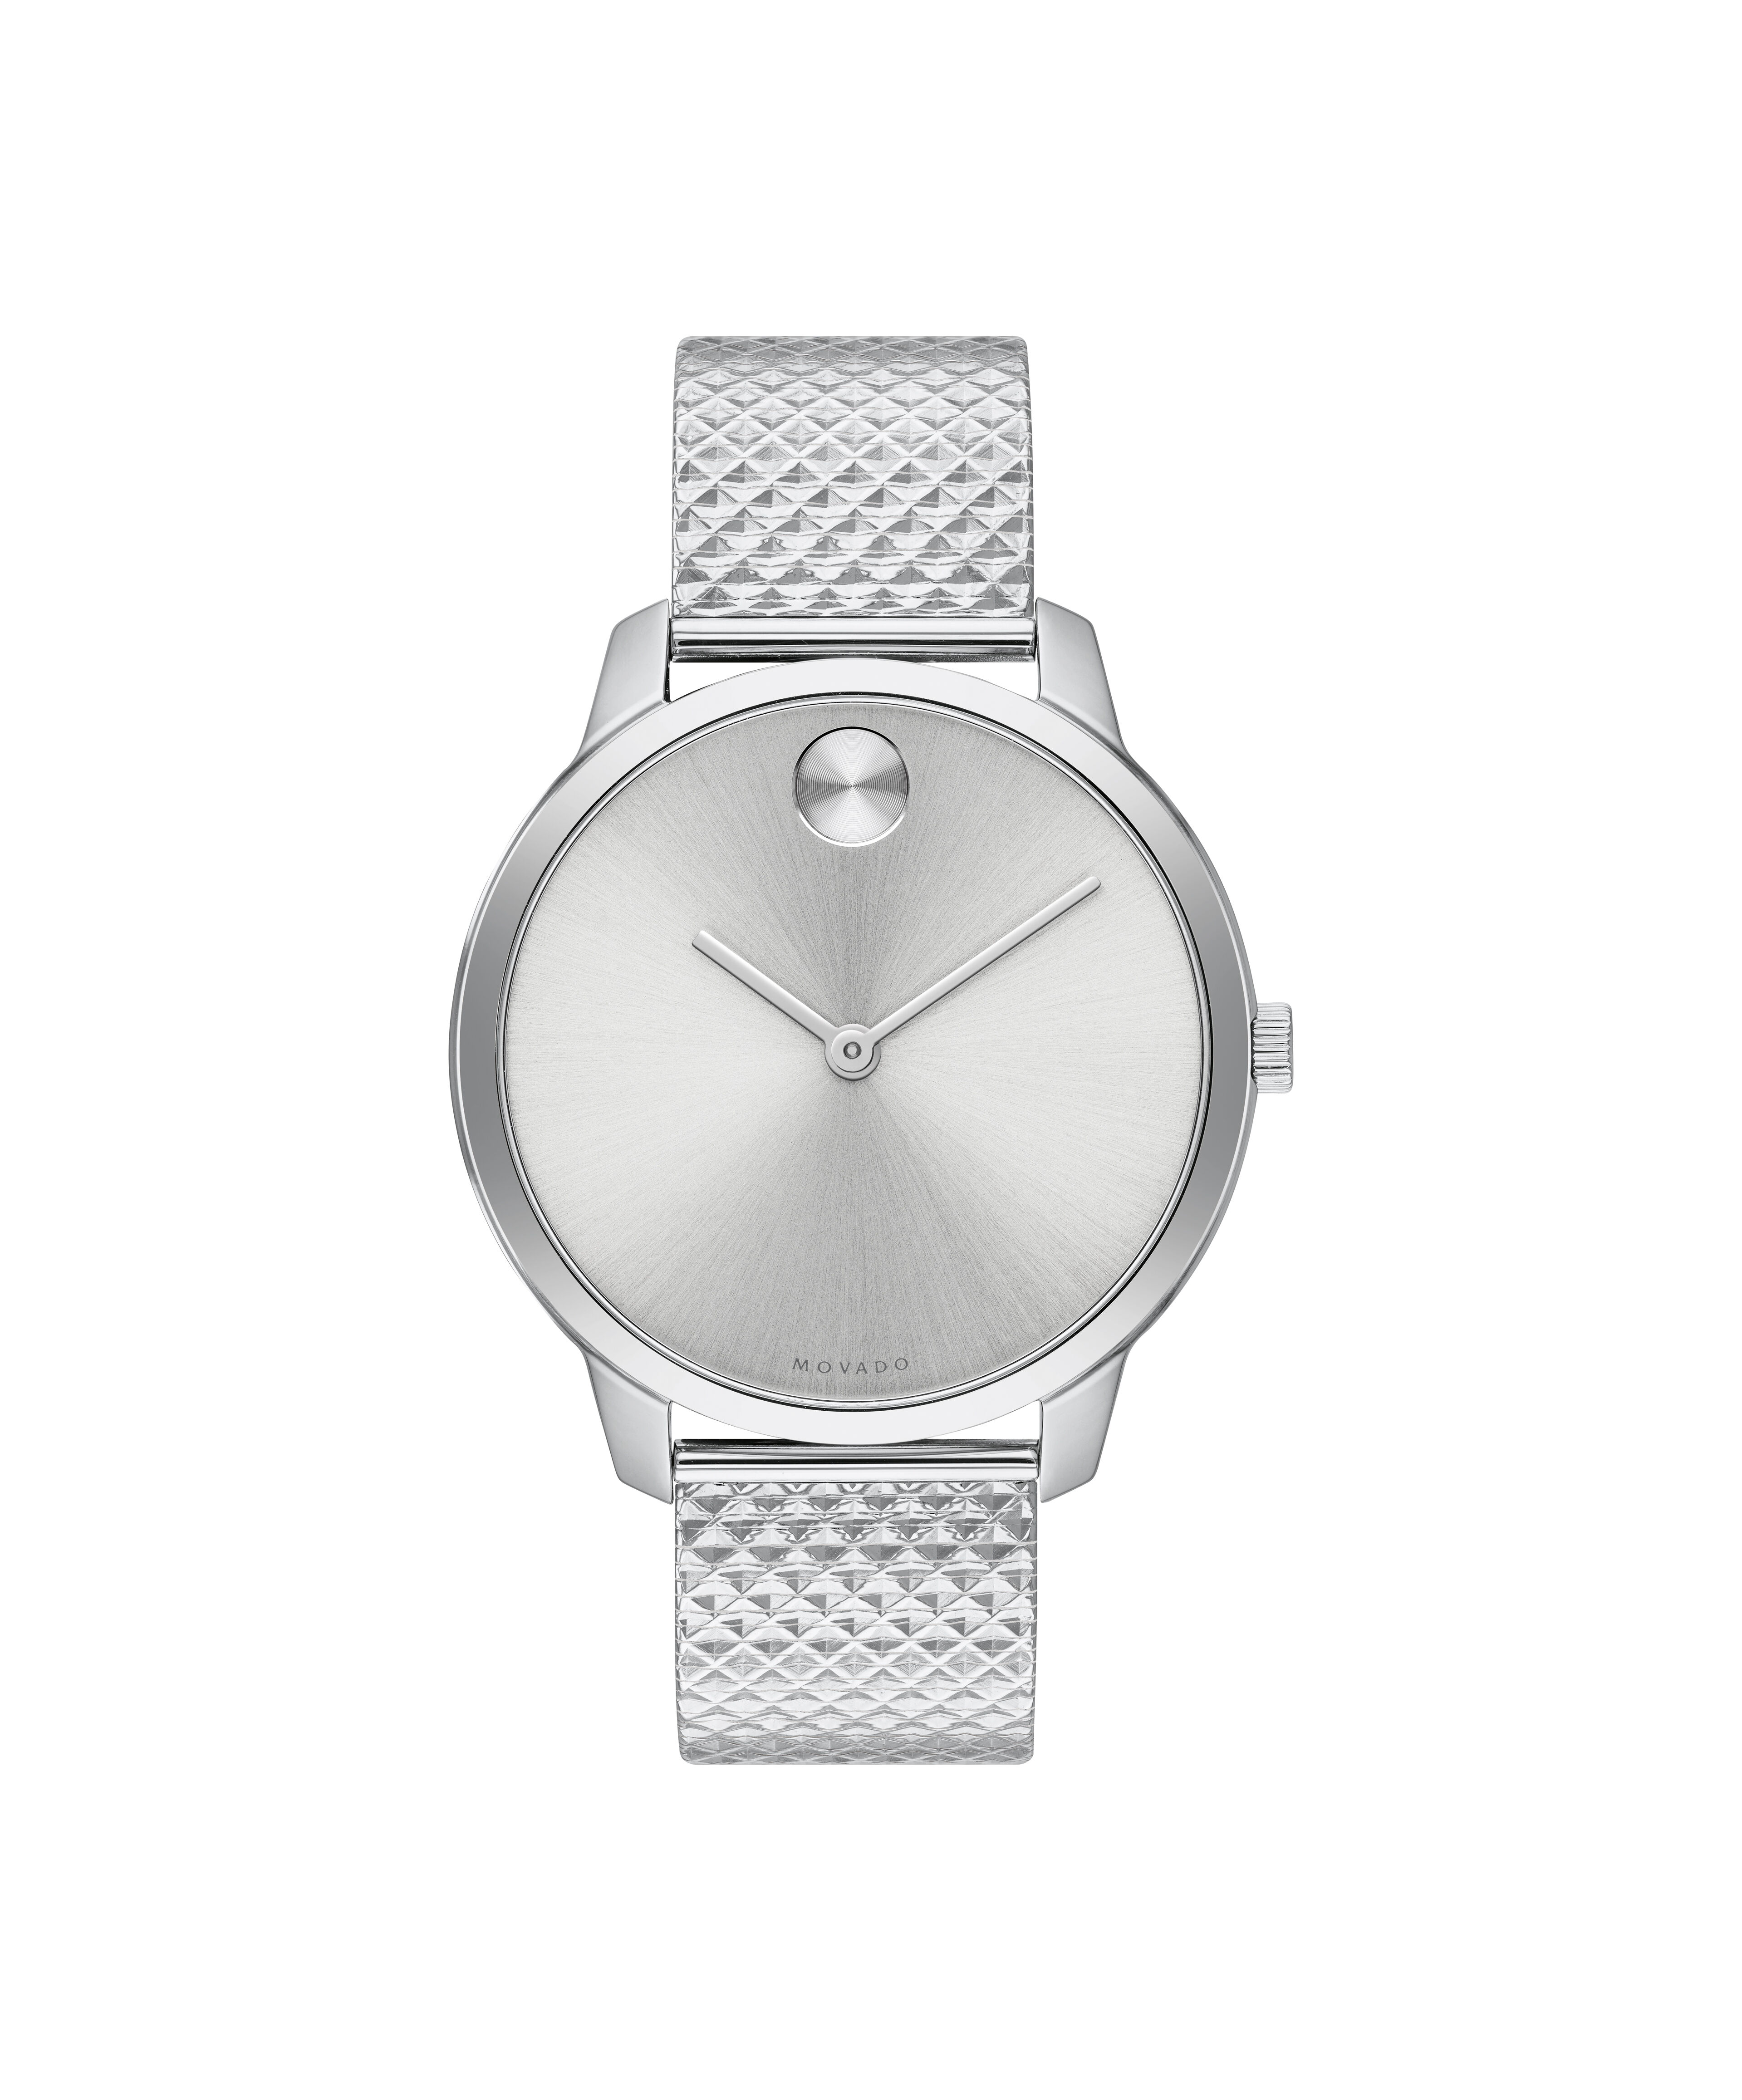 Movado Chronometre vintage women's wrist watch